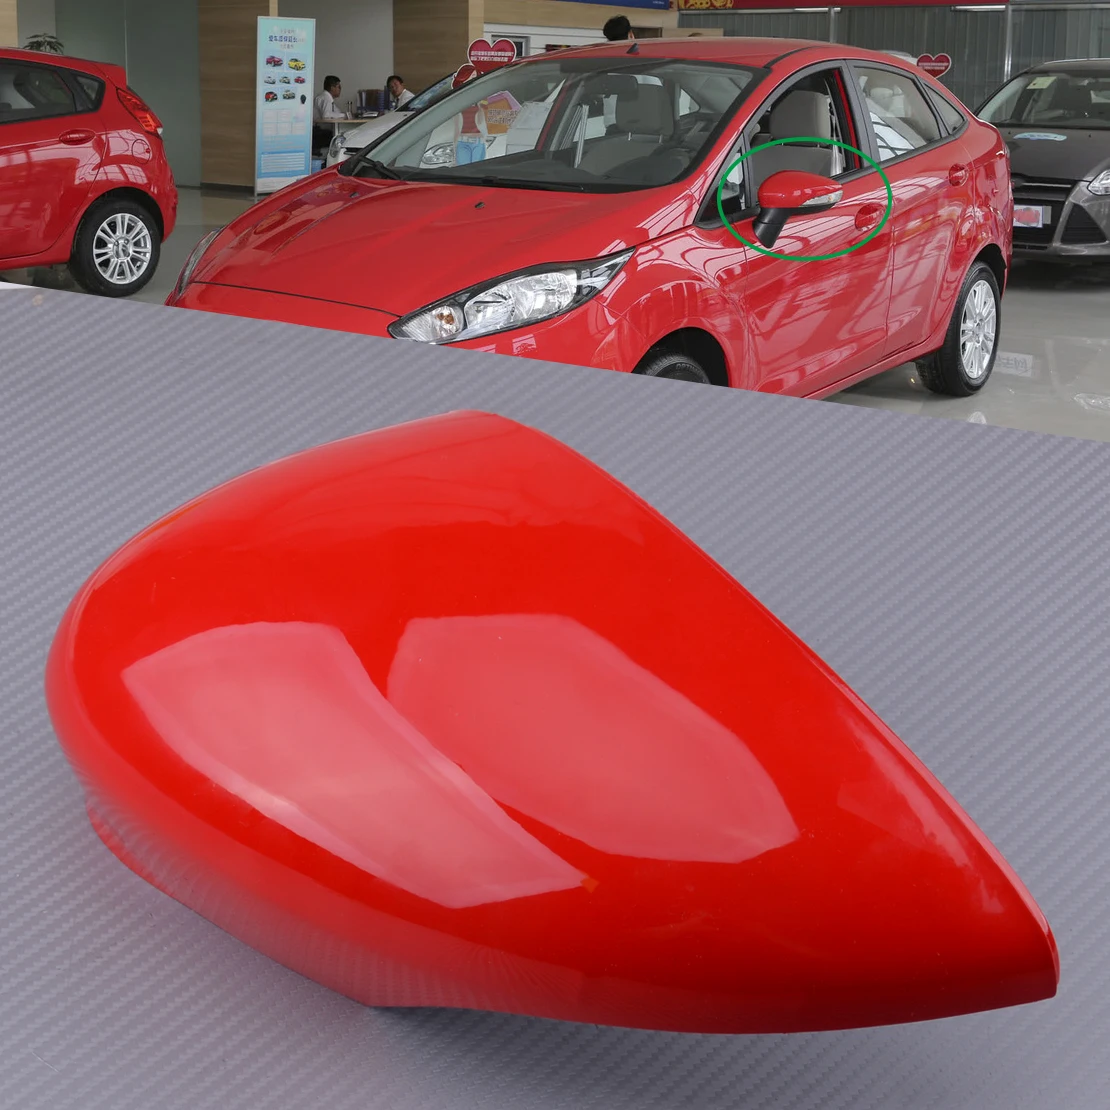 Крышка для зеркала с левым и красным крылом Красный пластик подходит Ford Fiesta MK7 2008